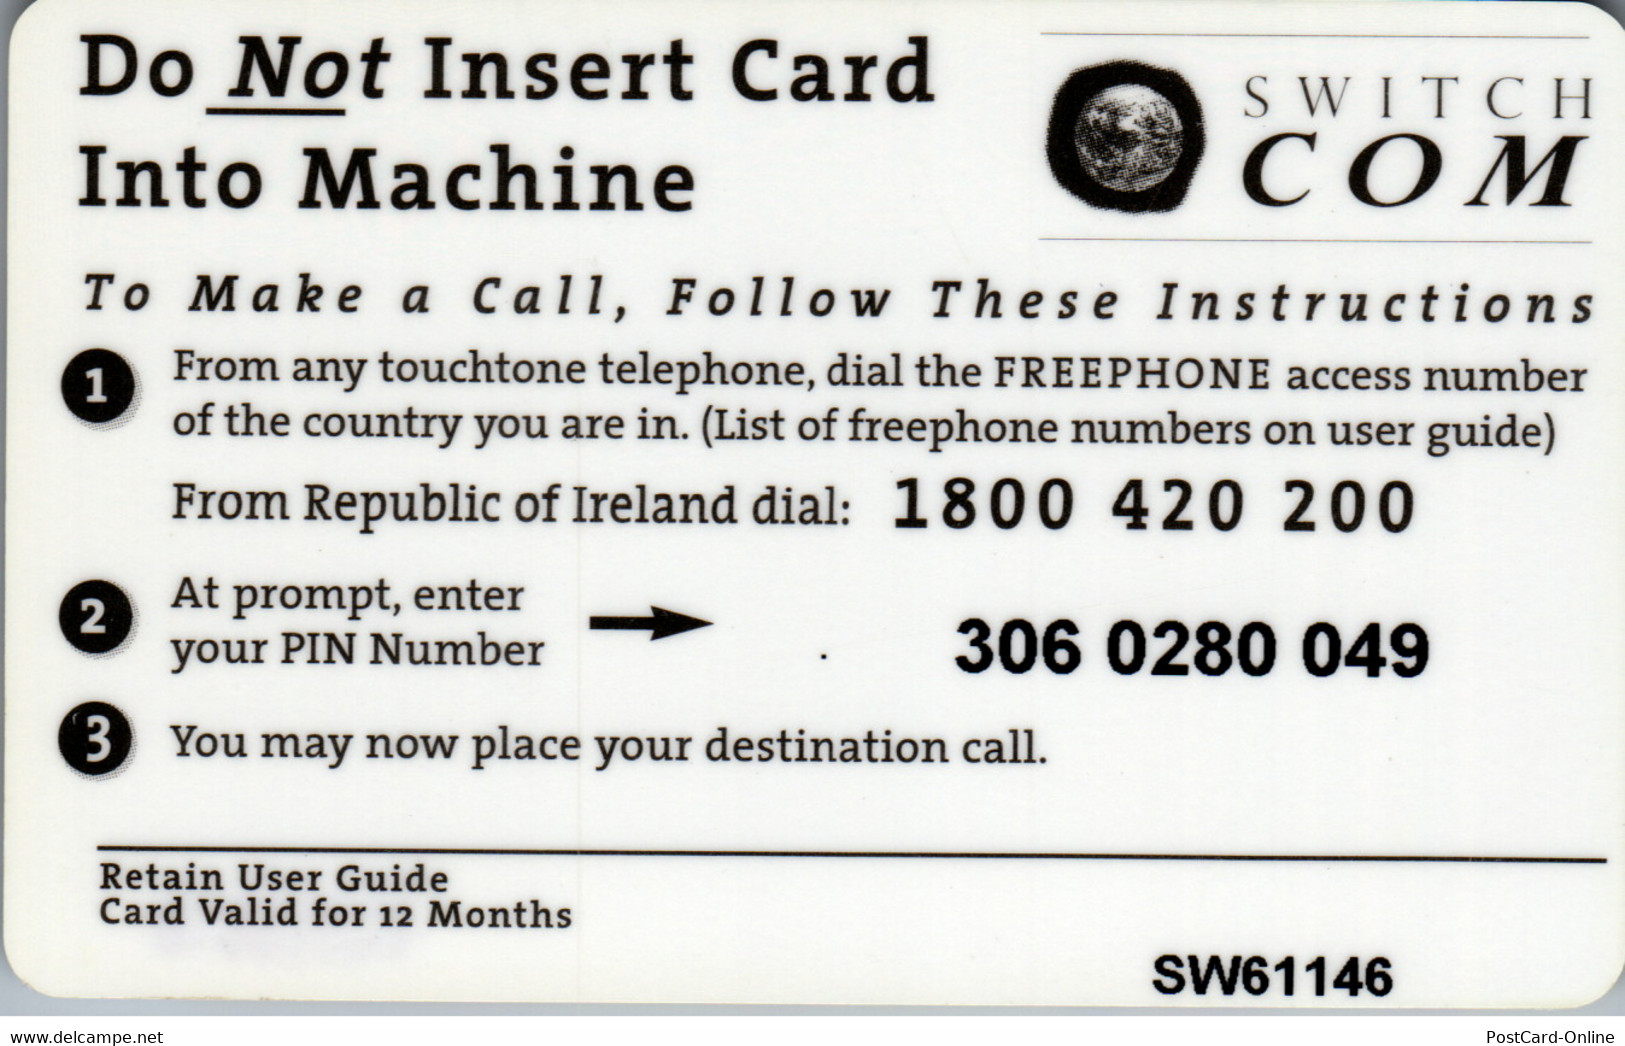 17659 - Großbritannien - Global Telecard , Switch Com - BT Kaarten Voor Hele Wereld (Vooraf Betaald)